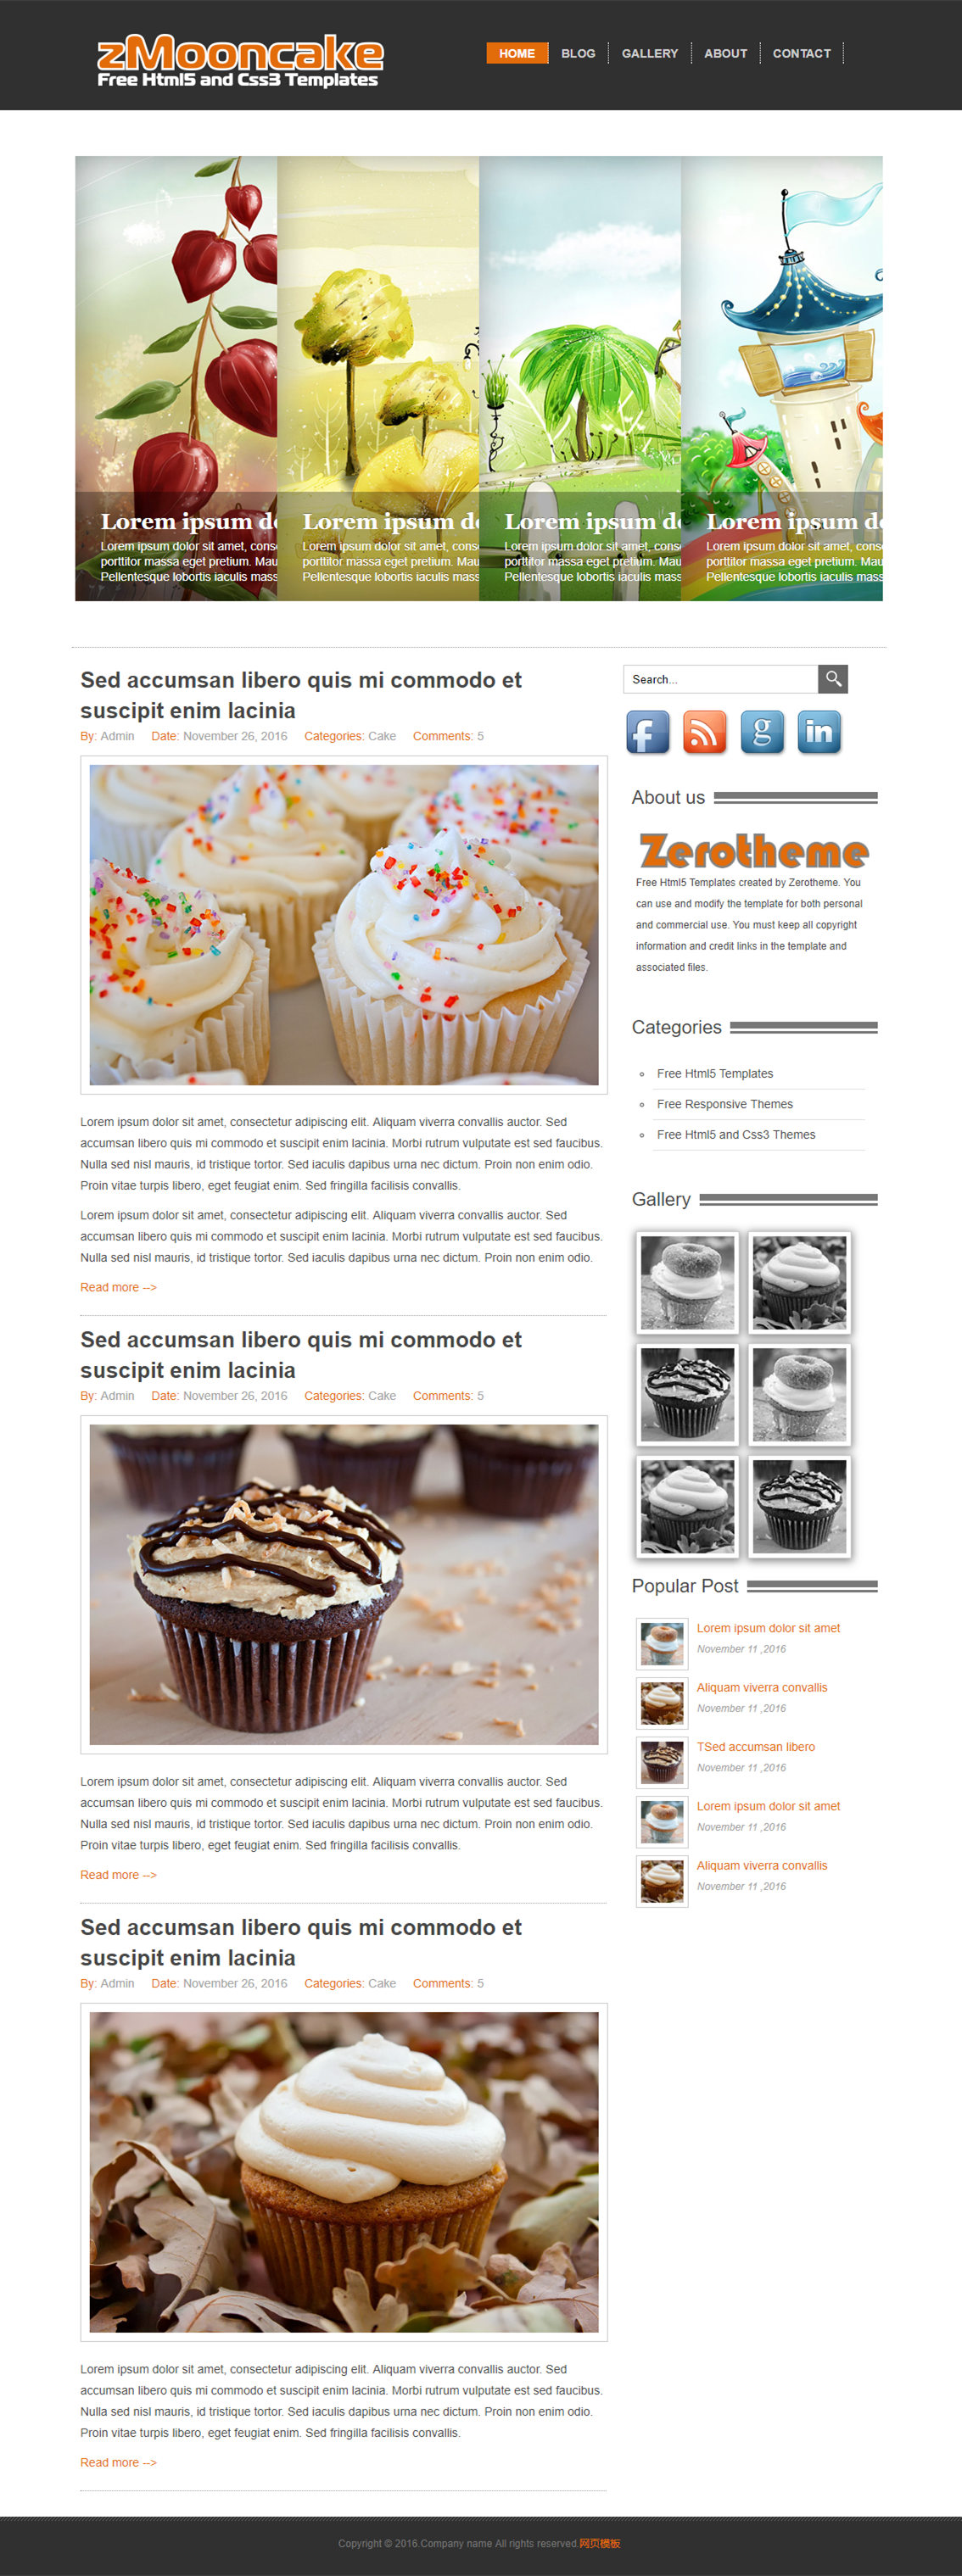 简洁风格的食品蛋糕DIY网站模板下载